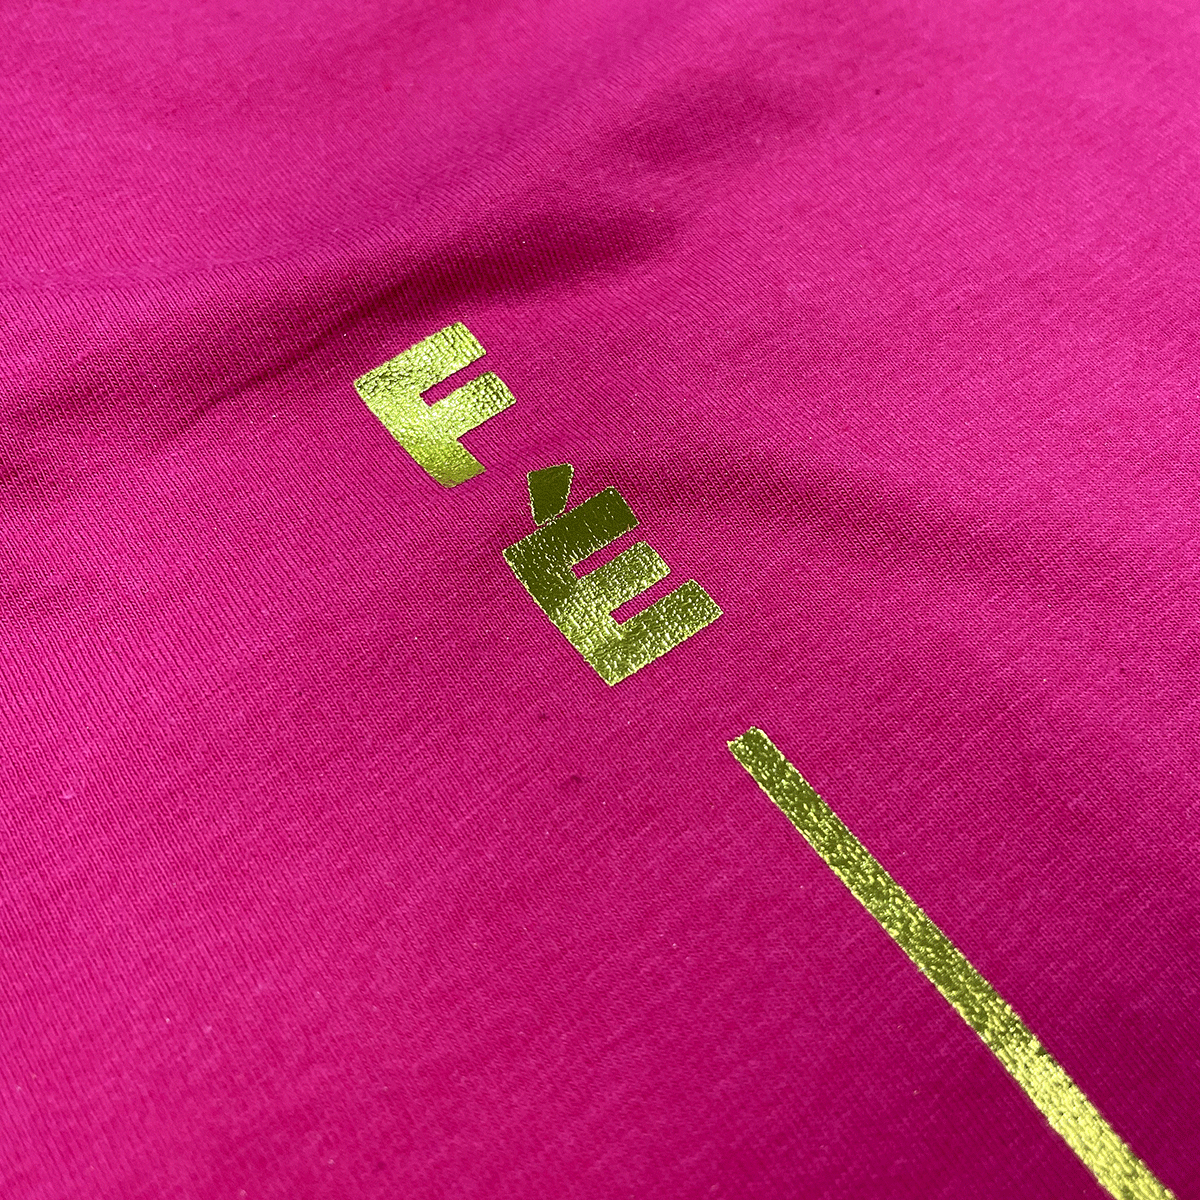 Camiseta Feminina Pink Fé Listra Dourado